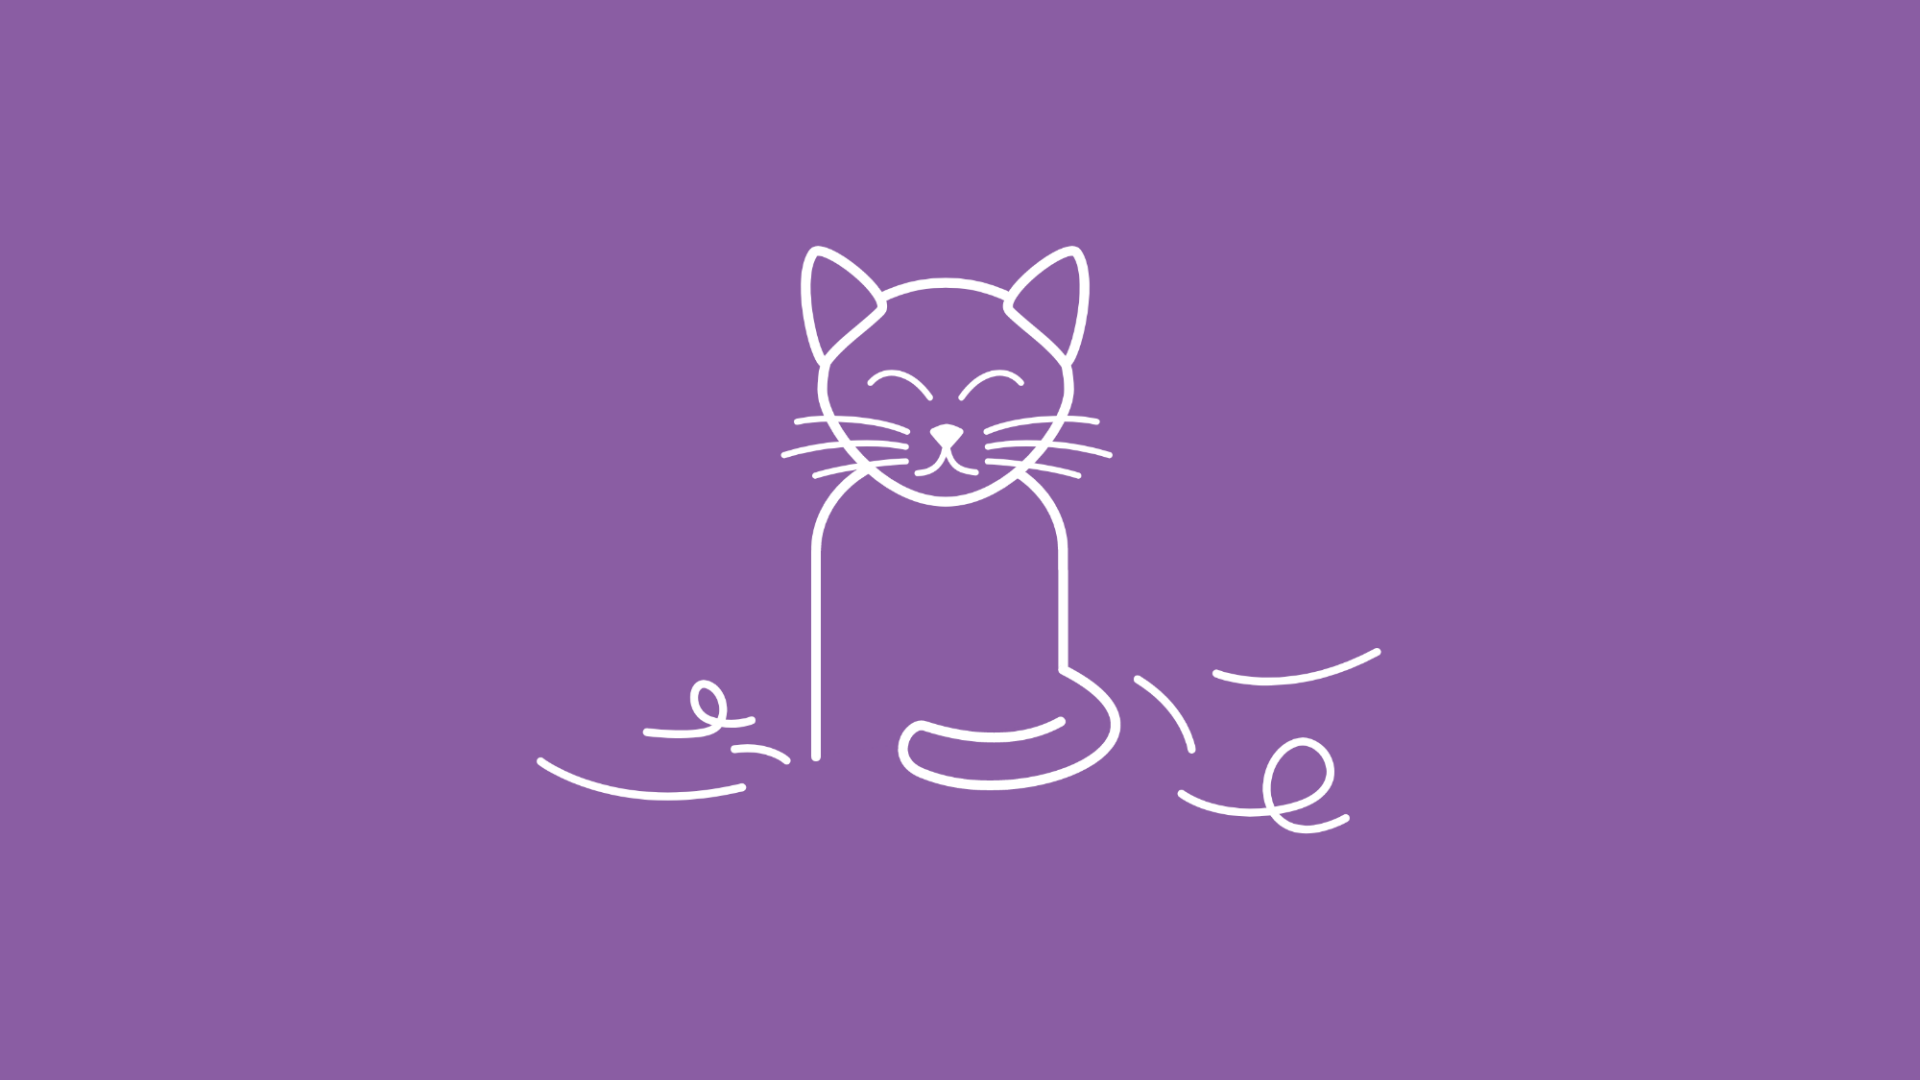 Um eine sitzende Katze im Icon-Stil sind einige Katzenhaare verteilt